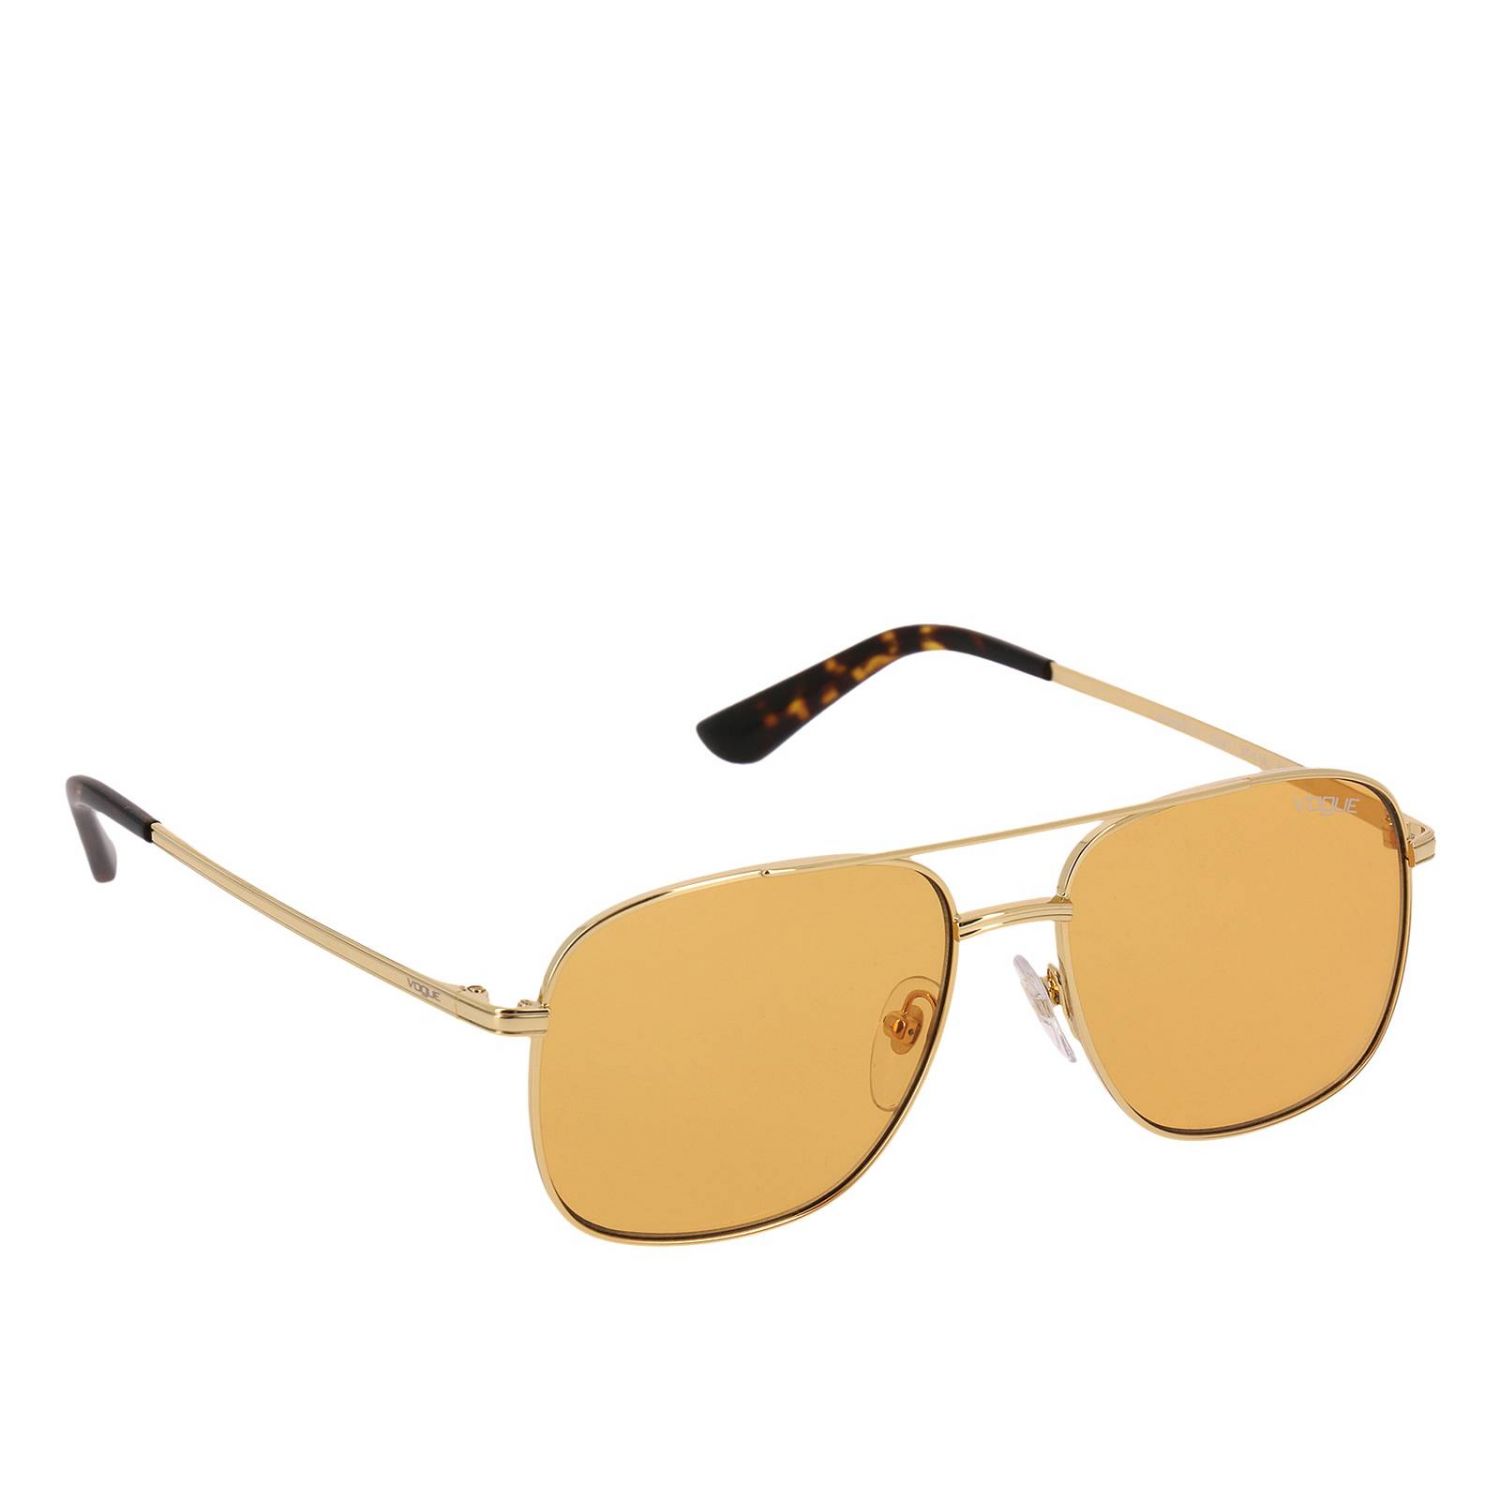 Vogue Damen Sonnenbrille  VO2606-S 2287/14 52mm braun gelb 303 71